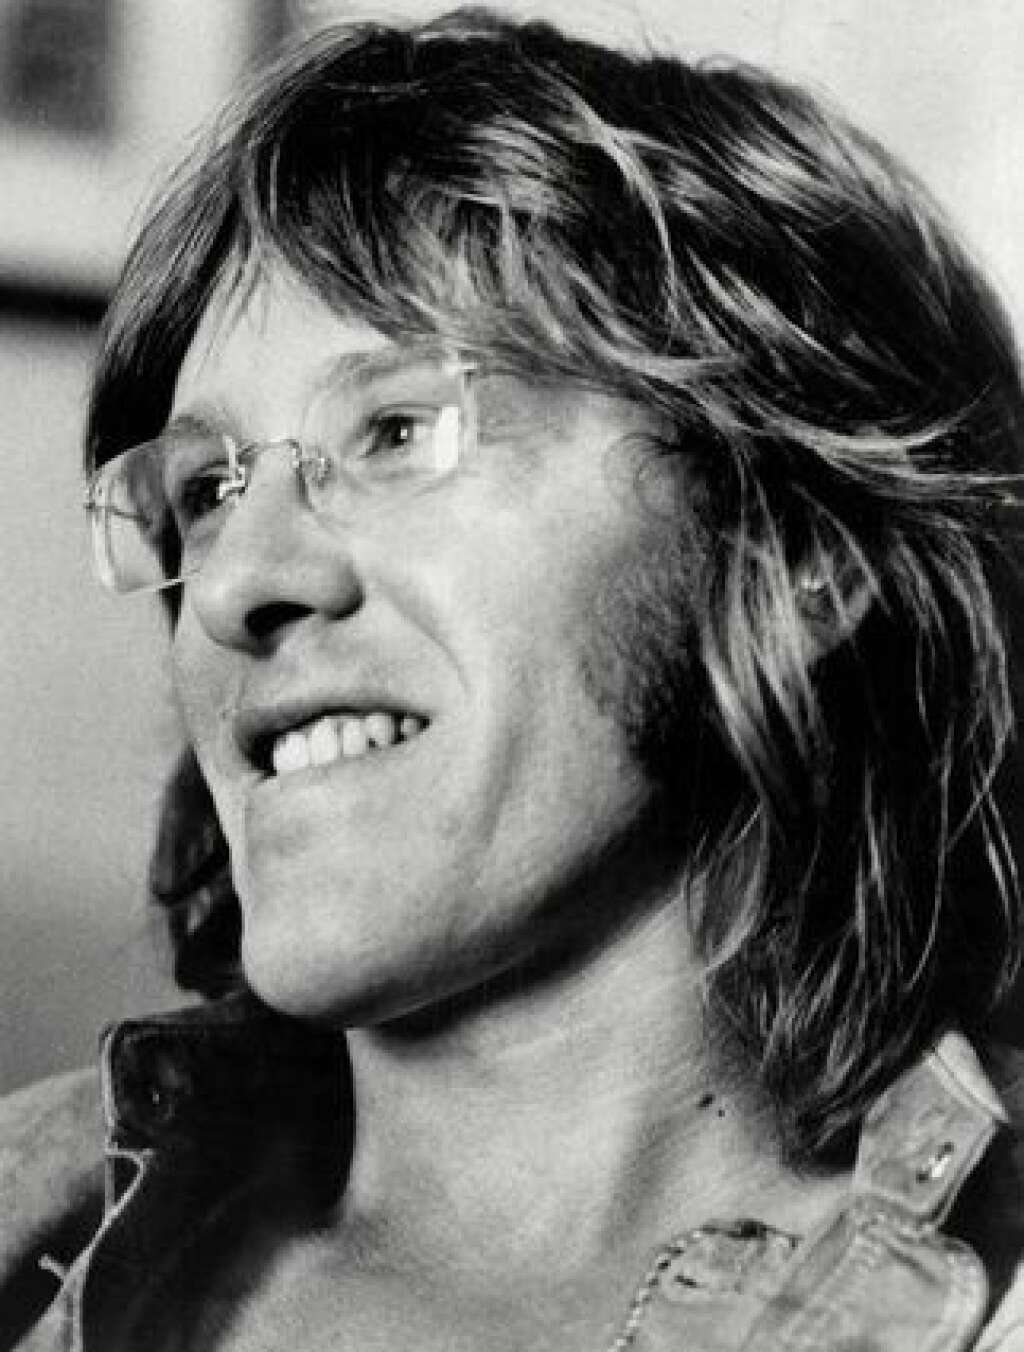 28 janvier - Paul Kantner - Paul Kantner, cofondateur et guitariste de Jefferson Airplane, groupe phare de l'ère du rock psychédélique des années 1960, <a href="http://www.sfgate.com/music/article/Jefferson-Airplane-s-Paul-Kantner-dies-at-74-6791483.php" target="_blank">est décédé jeudi 28 janvier à l'âge de 74 ans</a>.  Kantner, qui avait notamment joué sur la scène du mythique festival de Woodstock en 1969, est mort des suites d'une crise cardiaque, précise le journal californien, citant son agent de longue date et amie Cynthia Bowman. Avec des titres à succès comme "Somebody to Love" ou "White Rabbit", Jefferson Airplane a écrit plusieurs hymnes du mouvement hippie.   Lire notre article complet <a href="http://www.huffingtonpost.fr/2016/01/29/paul-kantner-mort-deces-jefferson-airplane-musique-rock_n_9108304.html?utm_hp_ref=france" target="_blank">ici</a>.